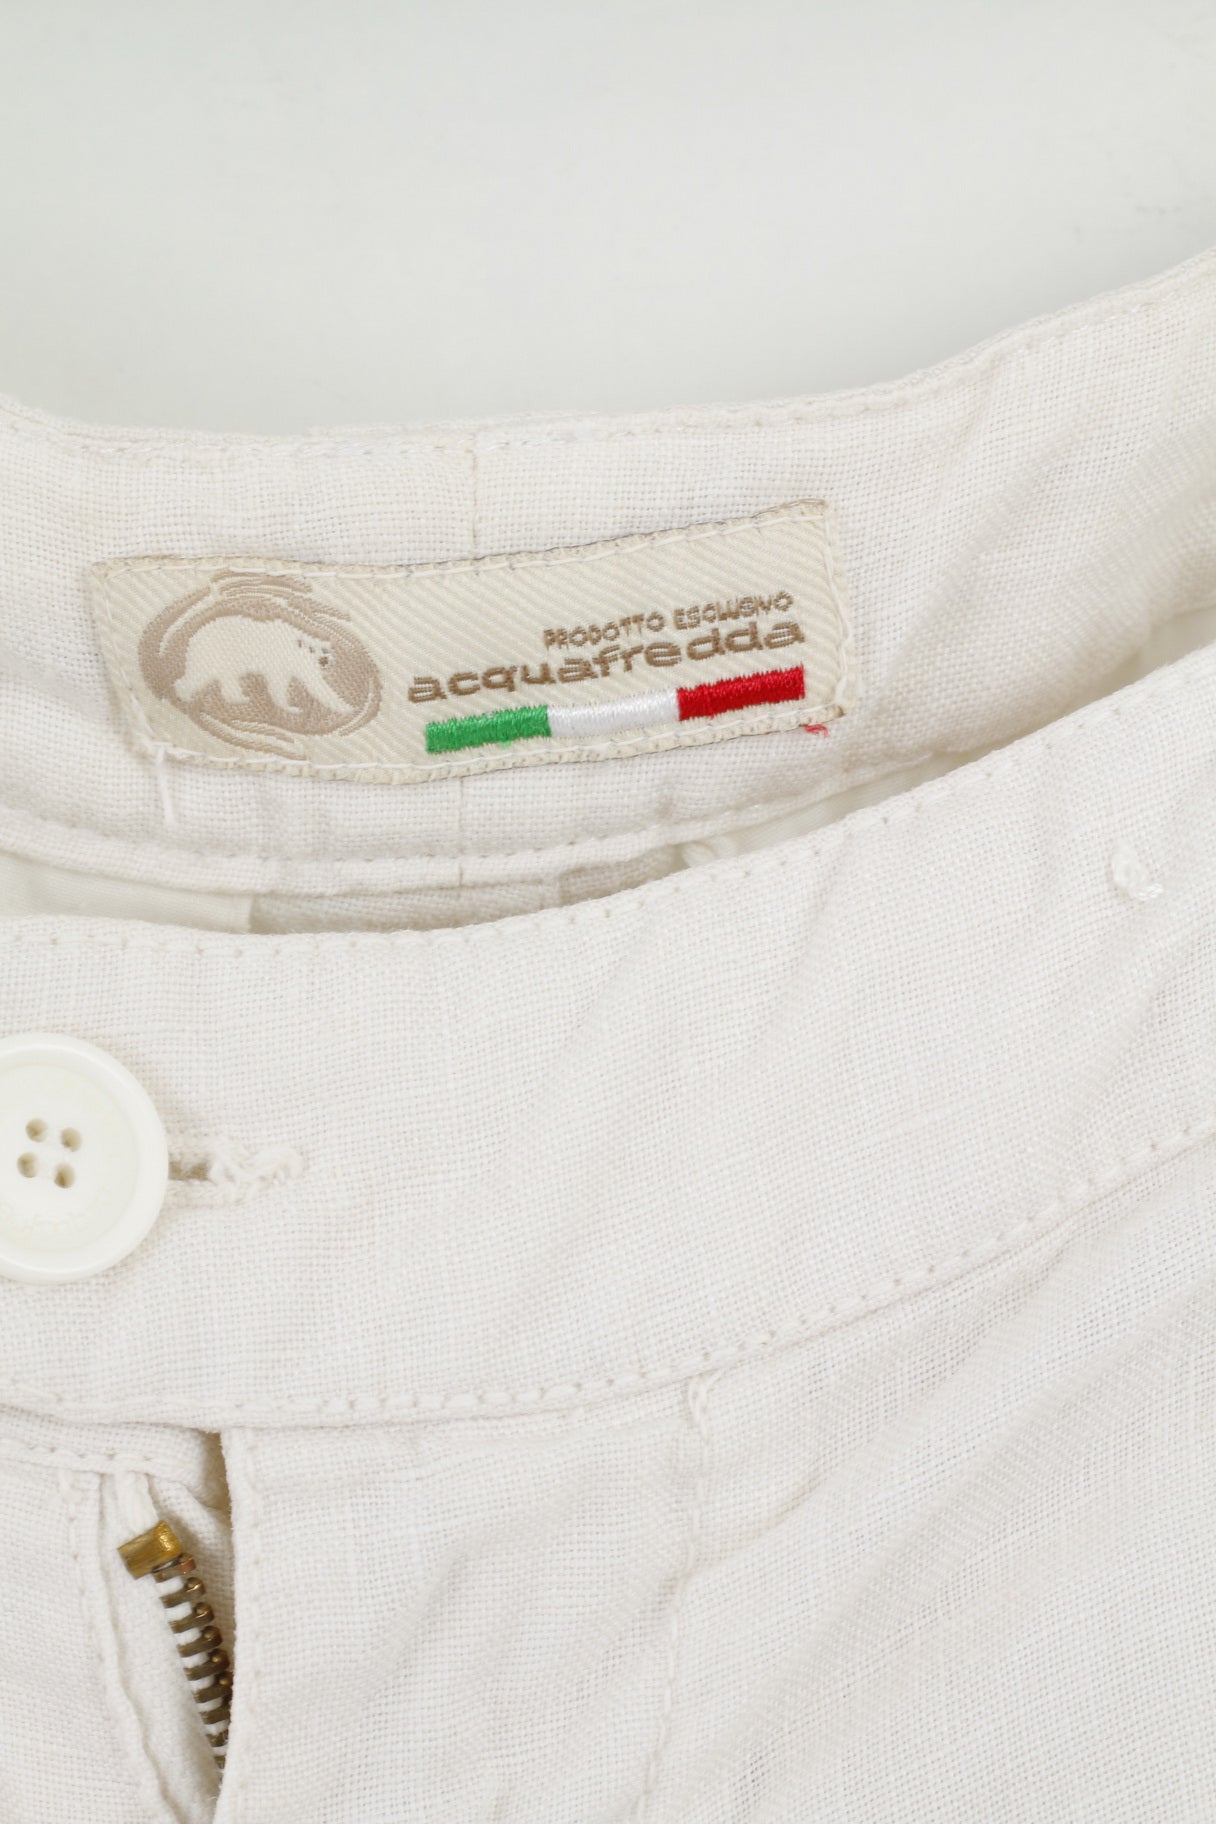 Acquafredda Mens 54 XL Shorts Beige 100% Linen Made in Italy Summer